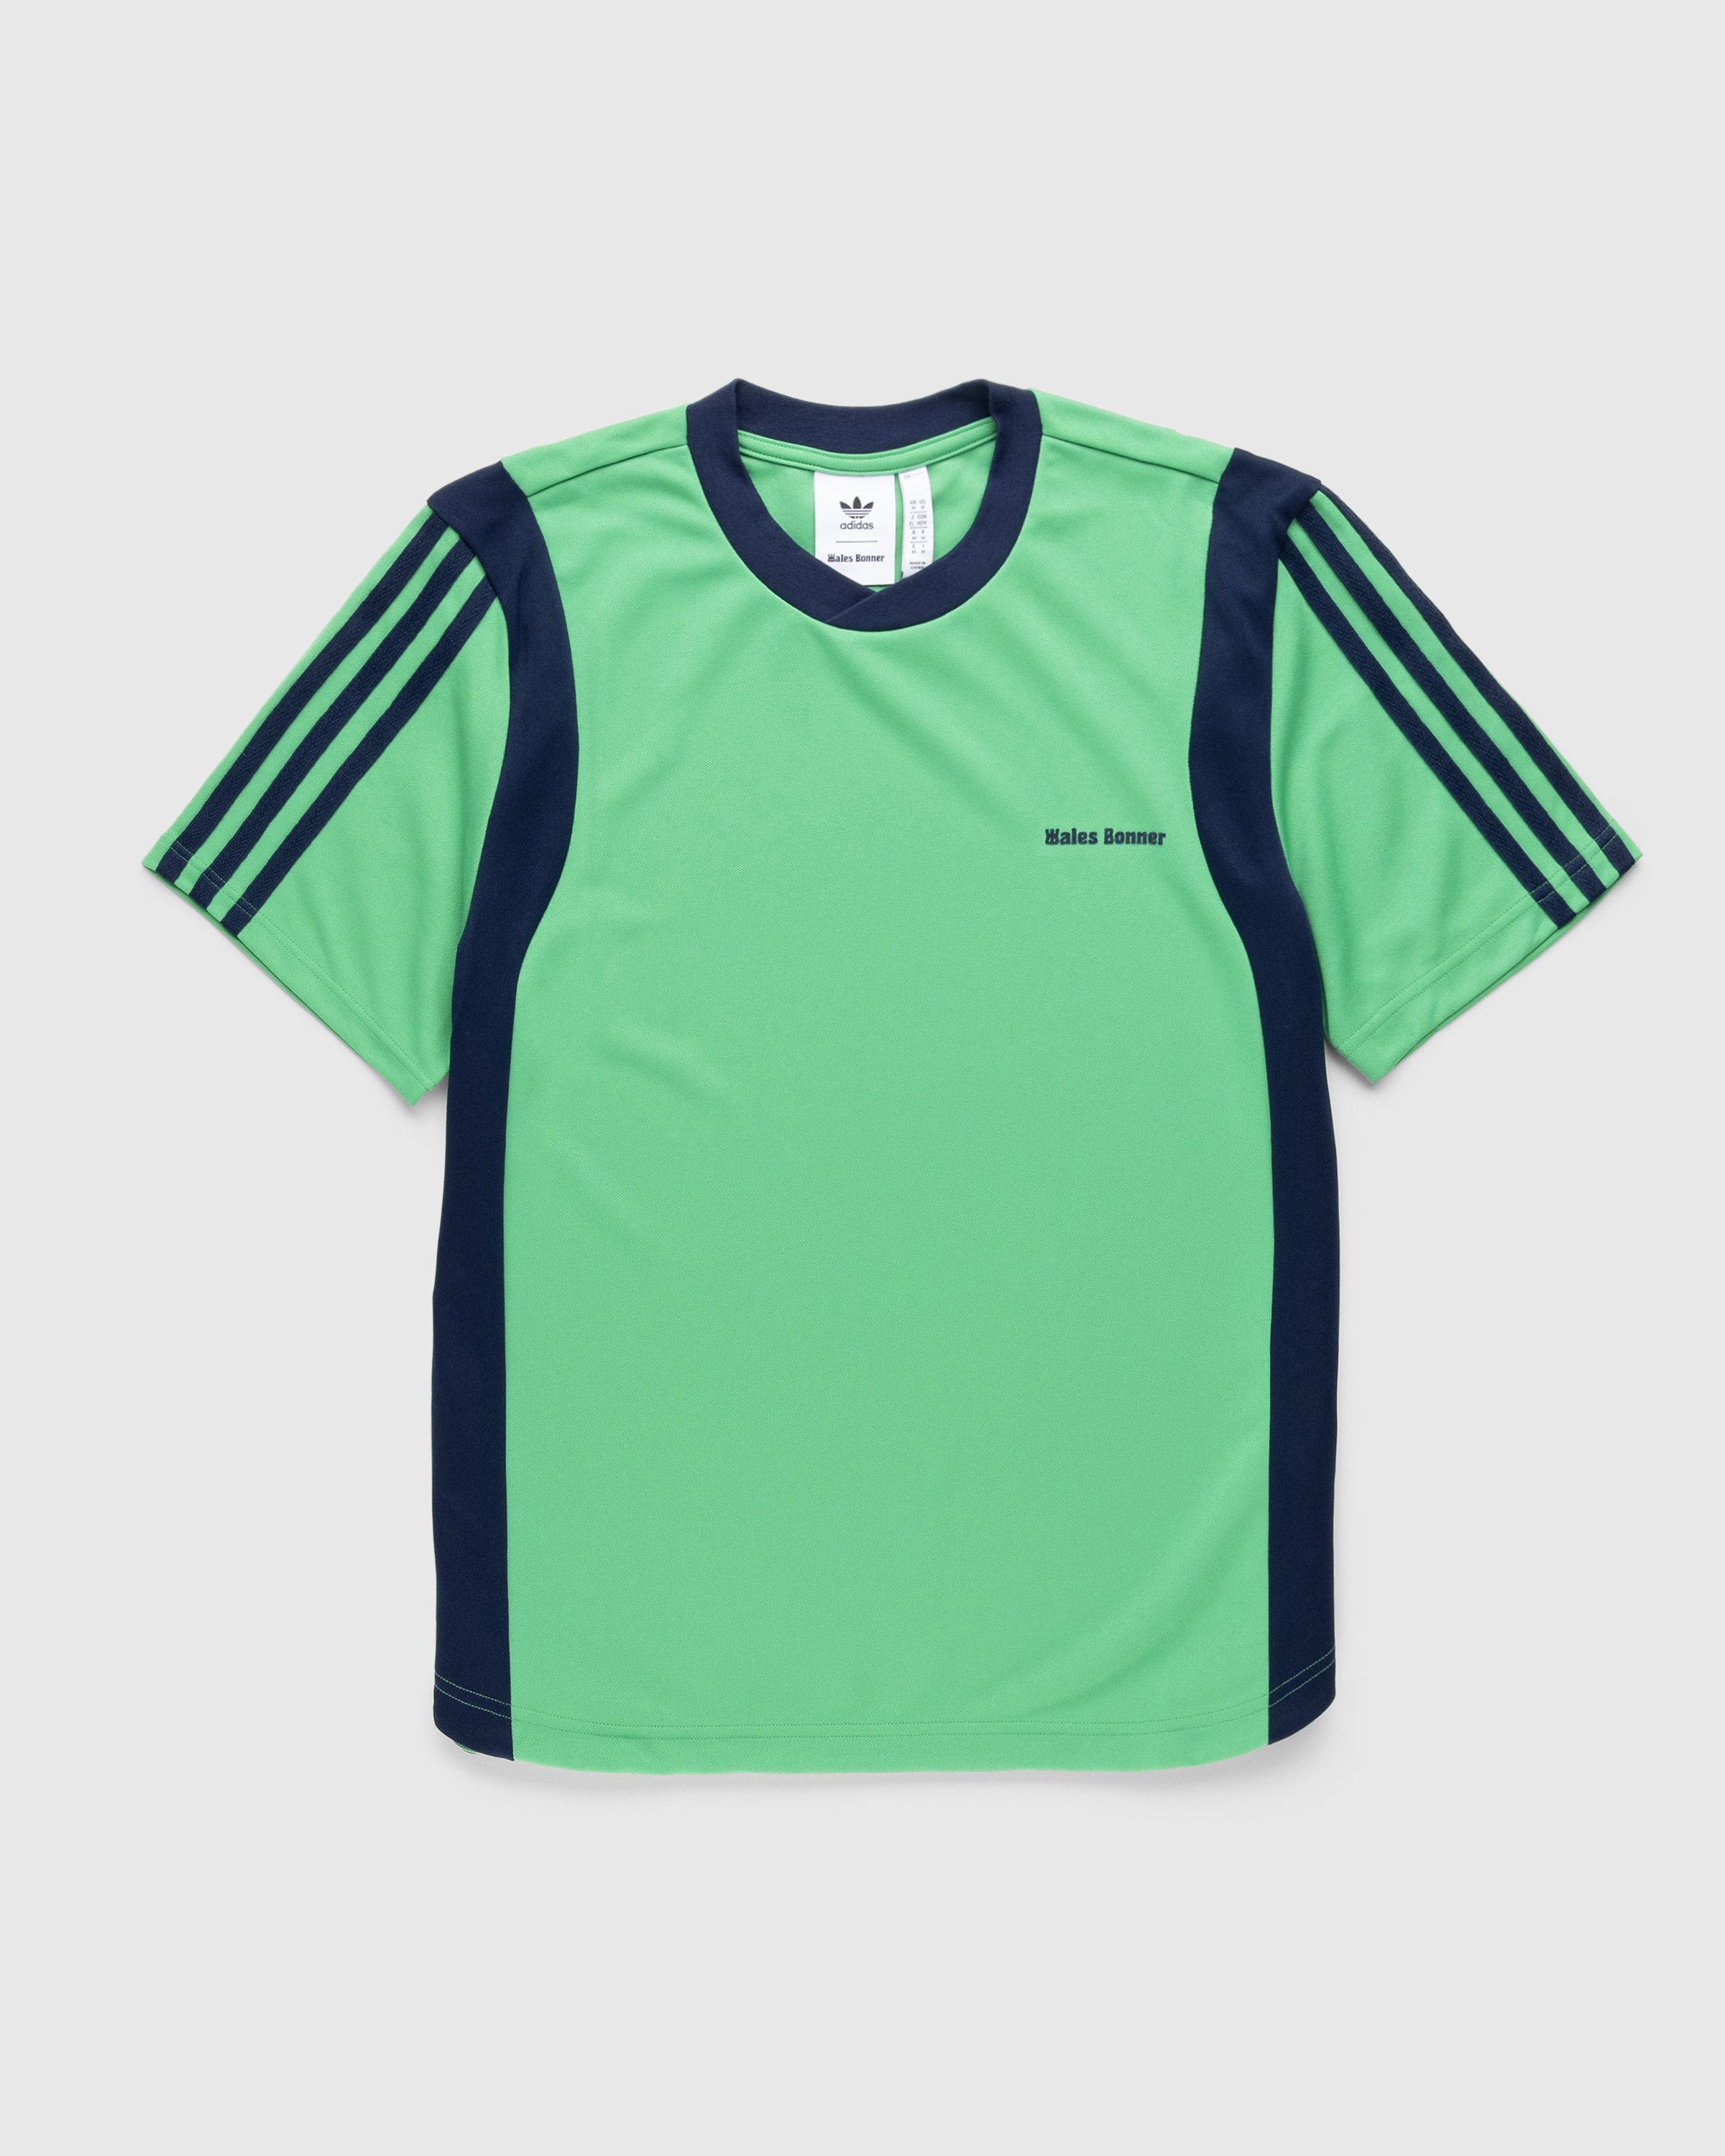 Adidas x Wales Bonner – Football Shirt Vivid Green